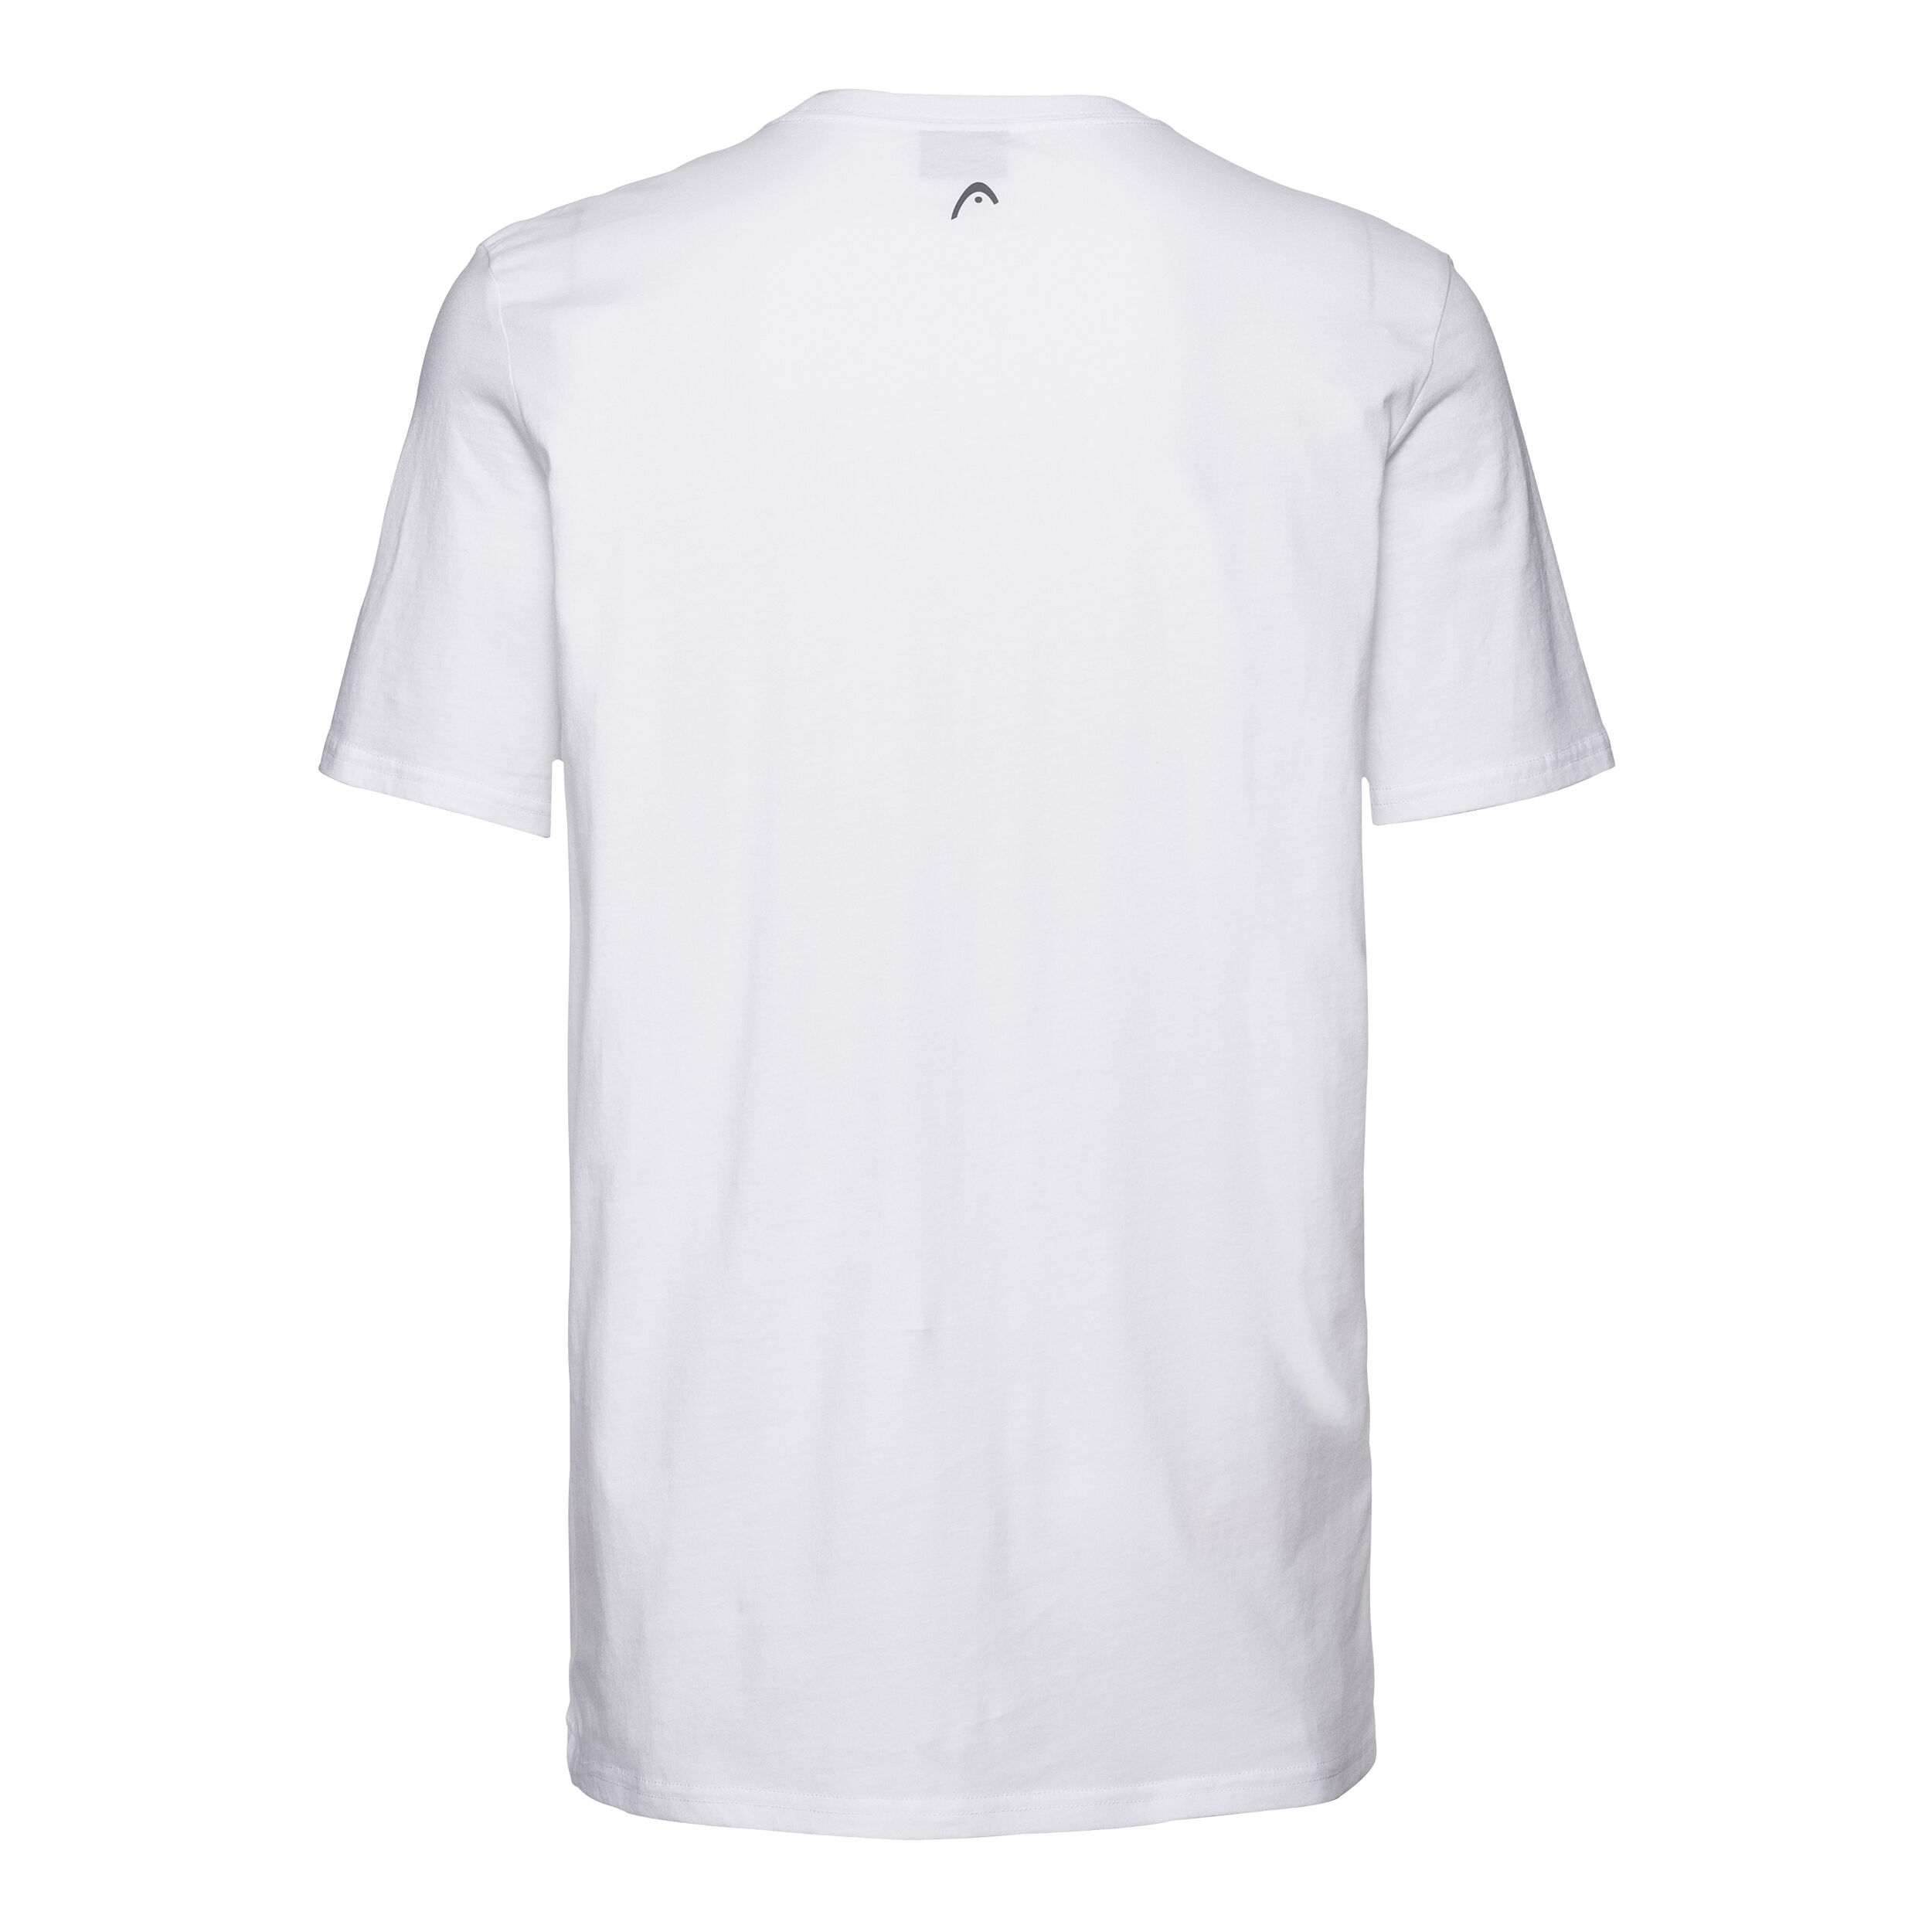 UVP € 29,90 54 Head Club IVAN T-Shirt  EU:XL 